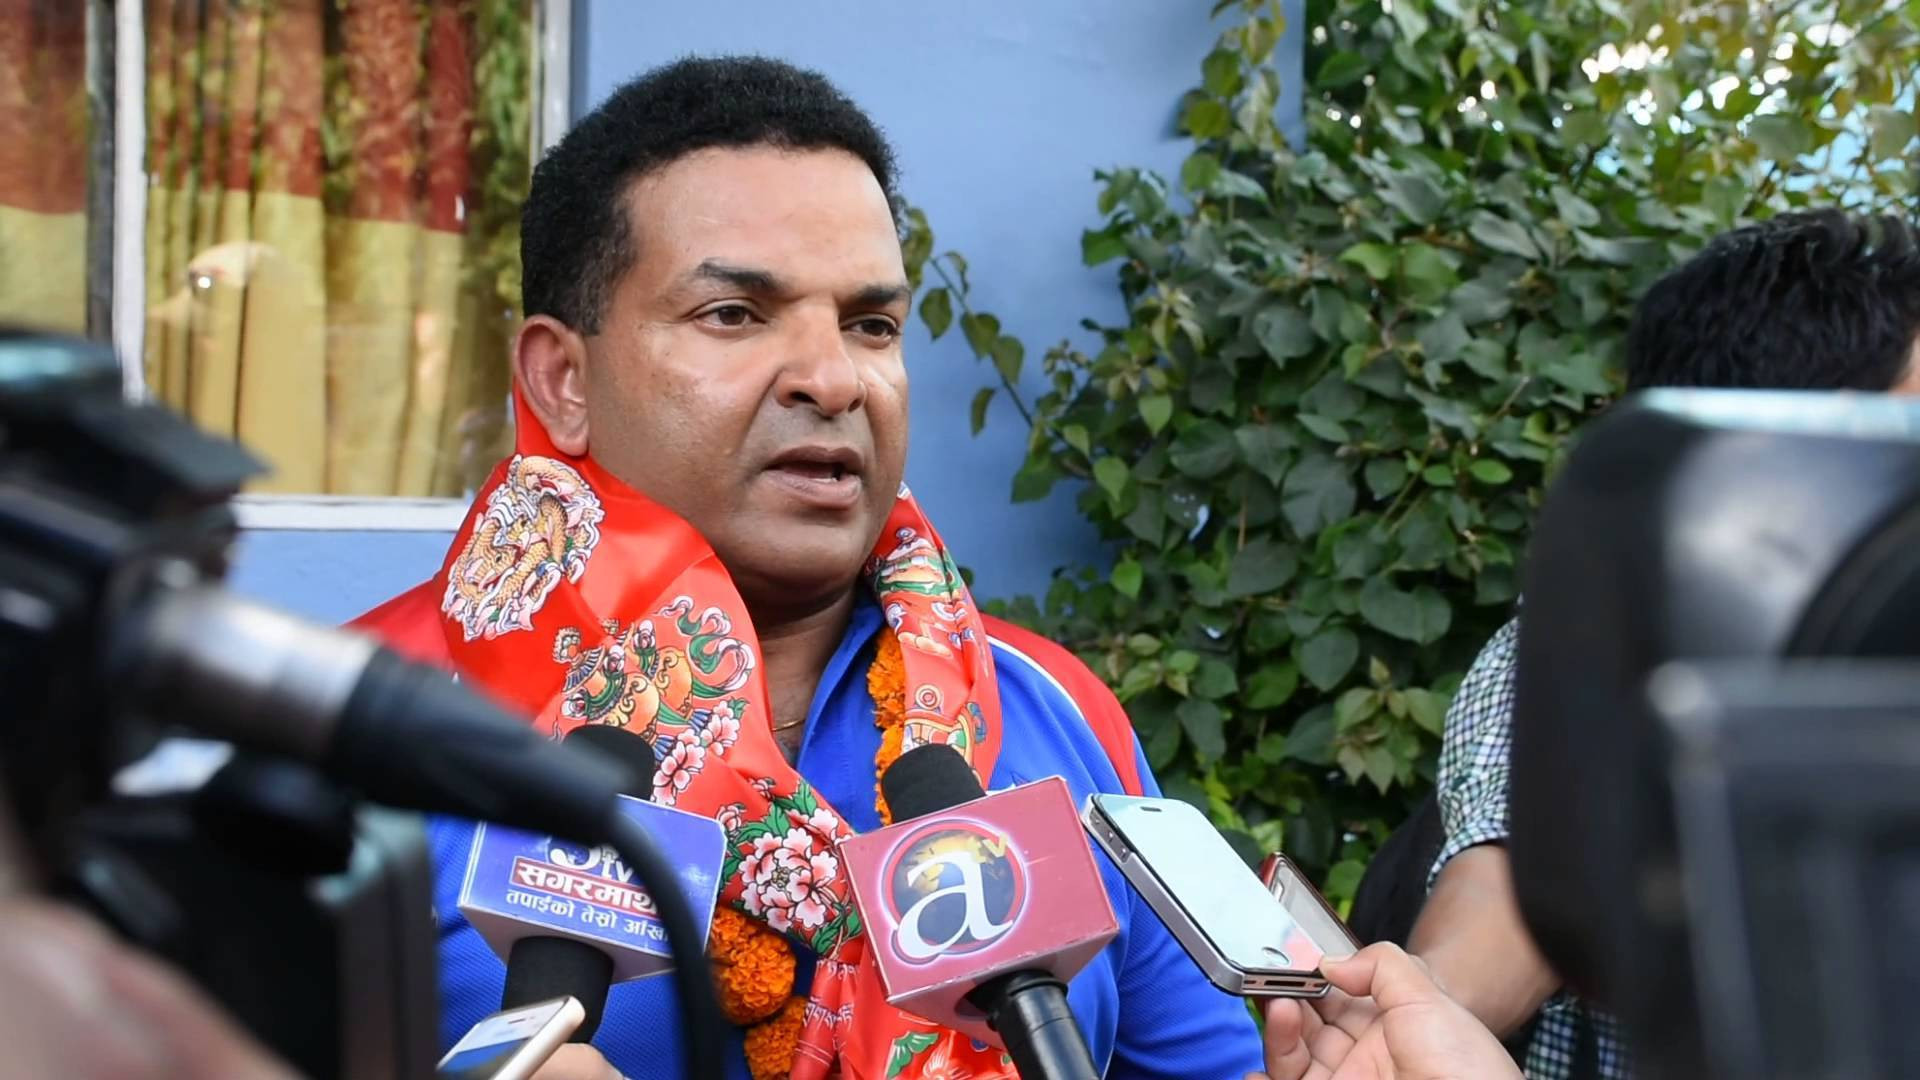 नेपाललाई विश्वकप खेलाउने पुबुदु दाेस्राेपटक क्रिकेट टोलीको मुख्य प्रशिक्षक नियुक्त